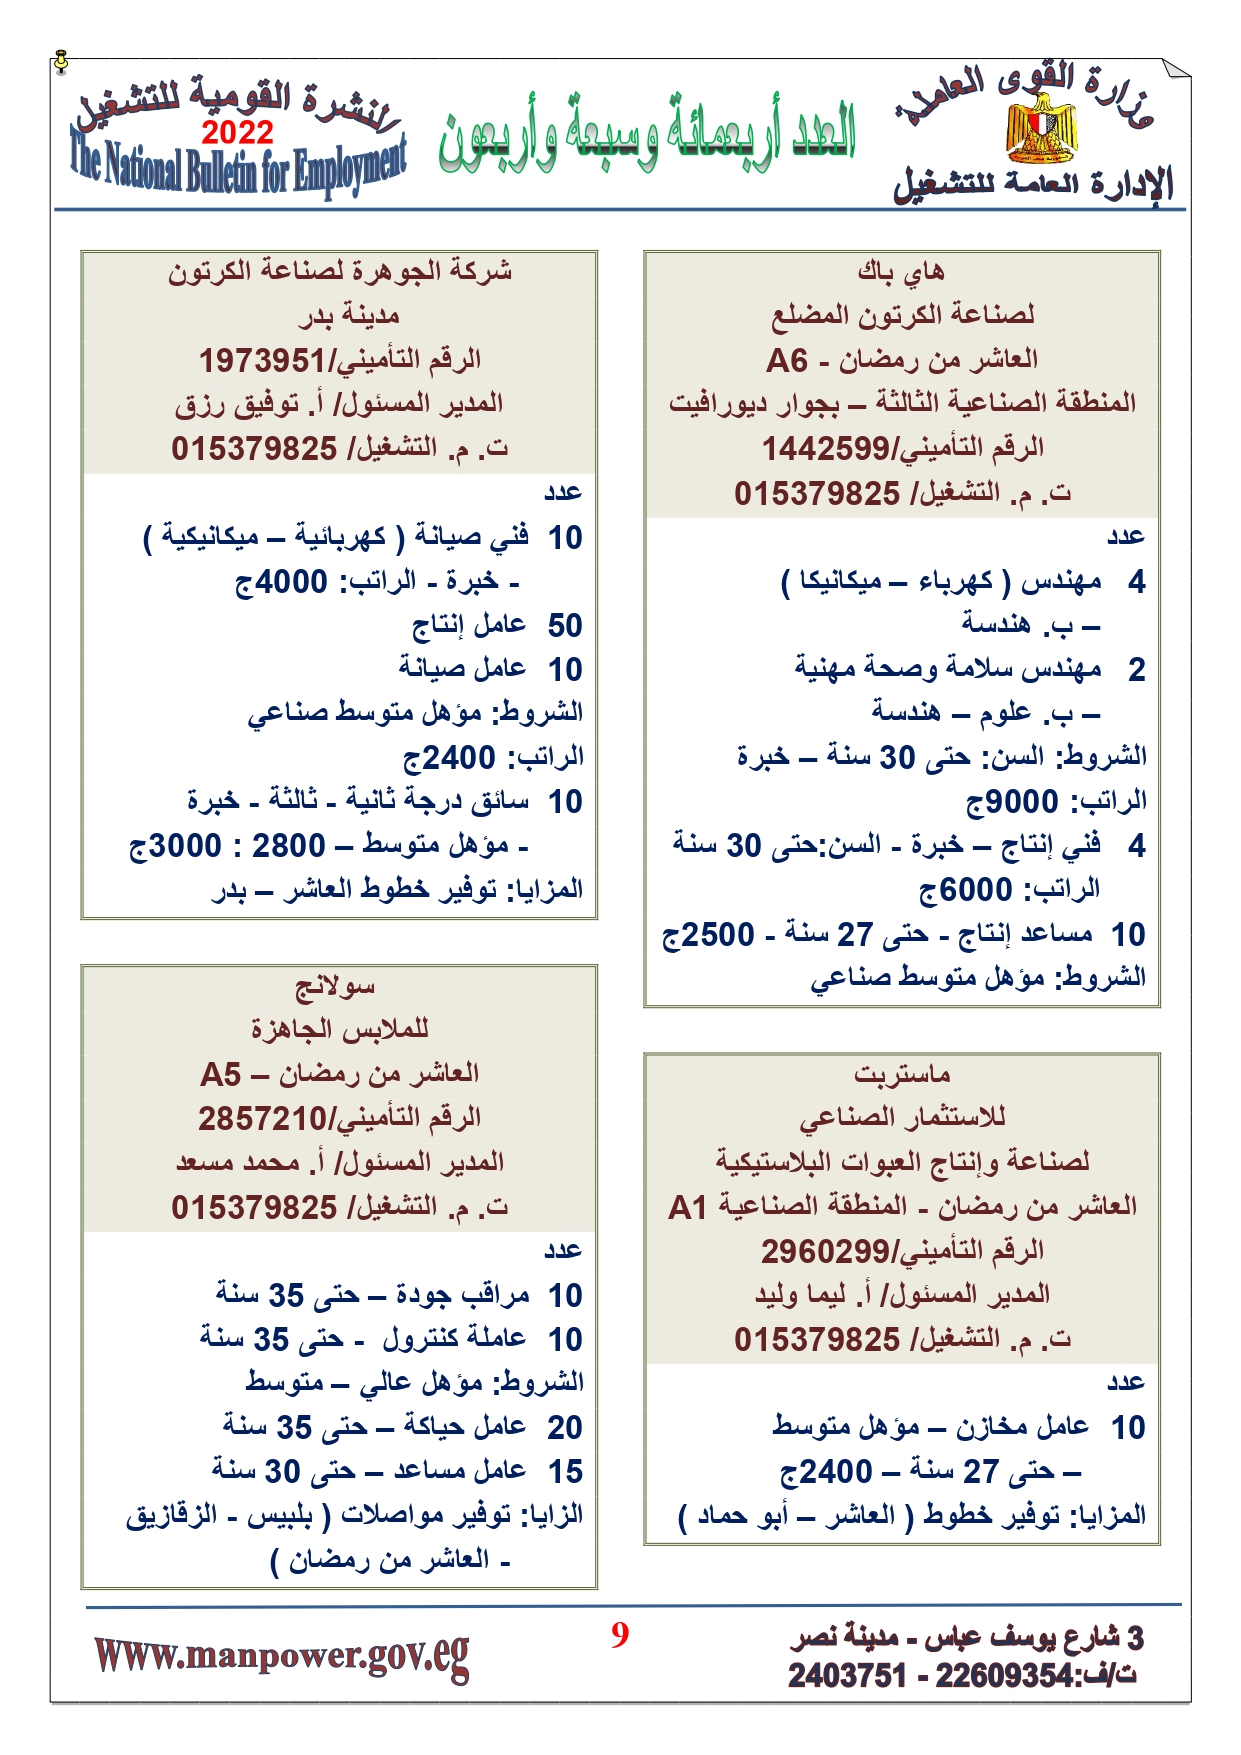 وظائف خالية بمصر وزارة القوي العاملة تعلن عن 2530 وظيفة شاغرة لجميع المؤهلات خلال فبراير ومارس 2022 5